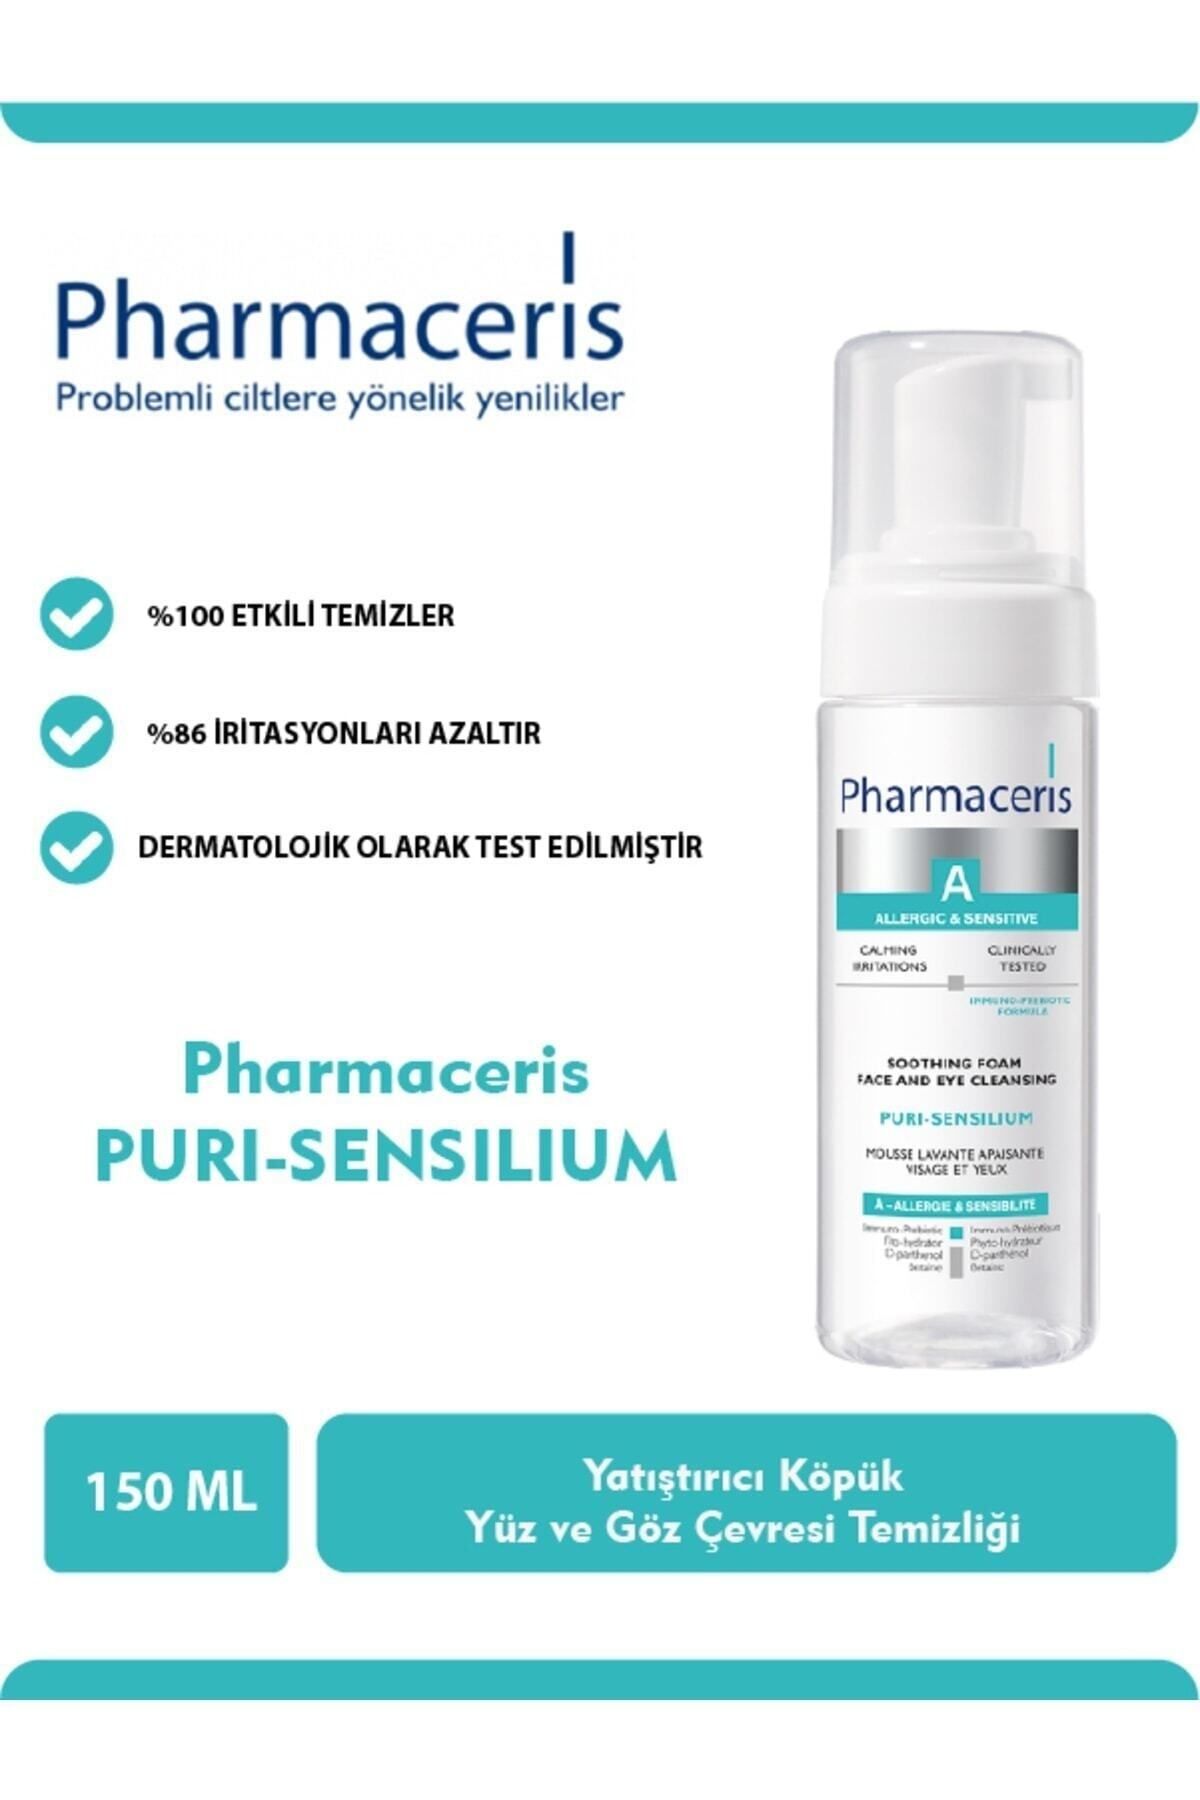 Pharmaceris A Puri-sensilium Yatıştırıcı Köpük 150 ml Pharmacy